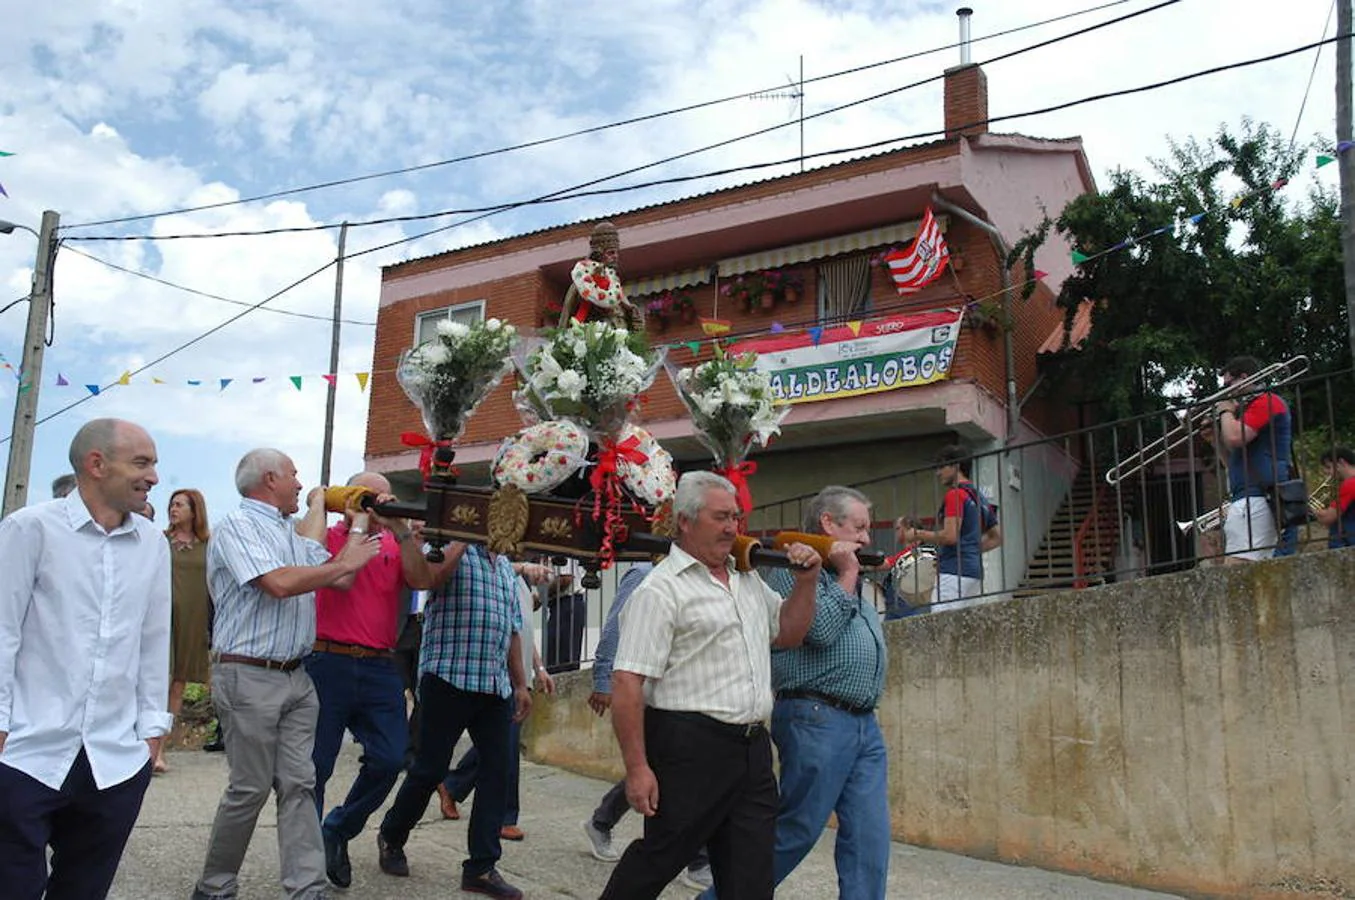 Imágenes correspondientes a la procesión de San Pedro en Aldealobos de Ocón